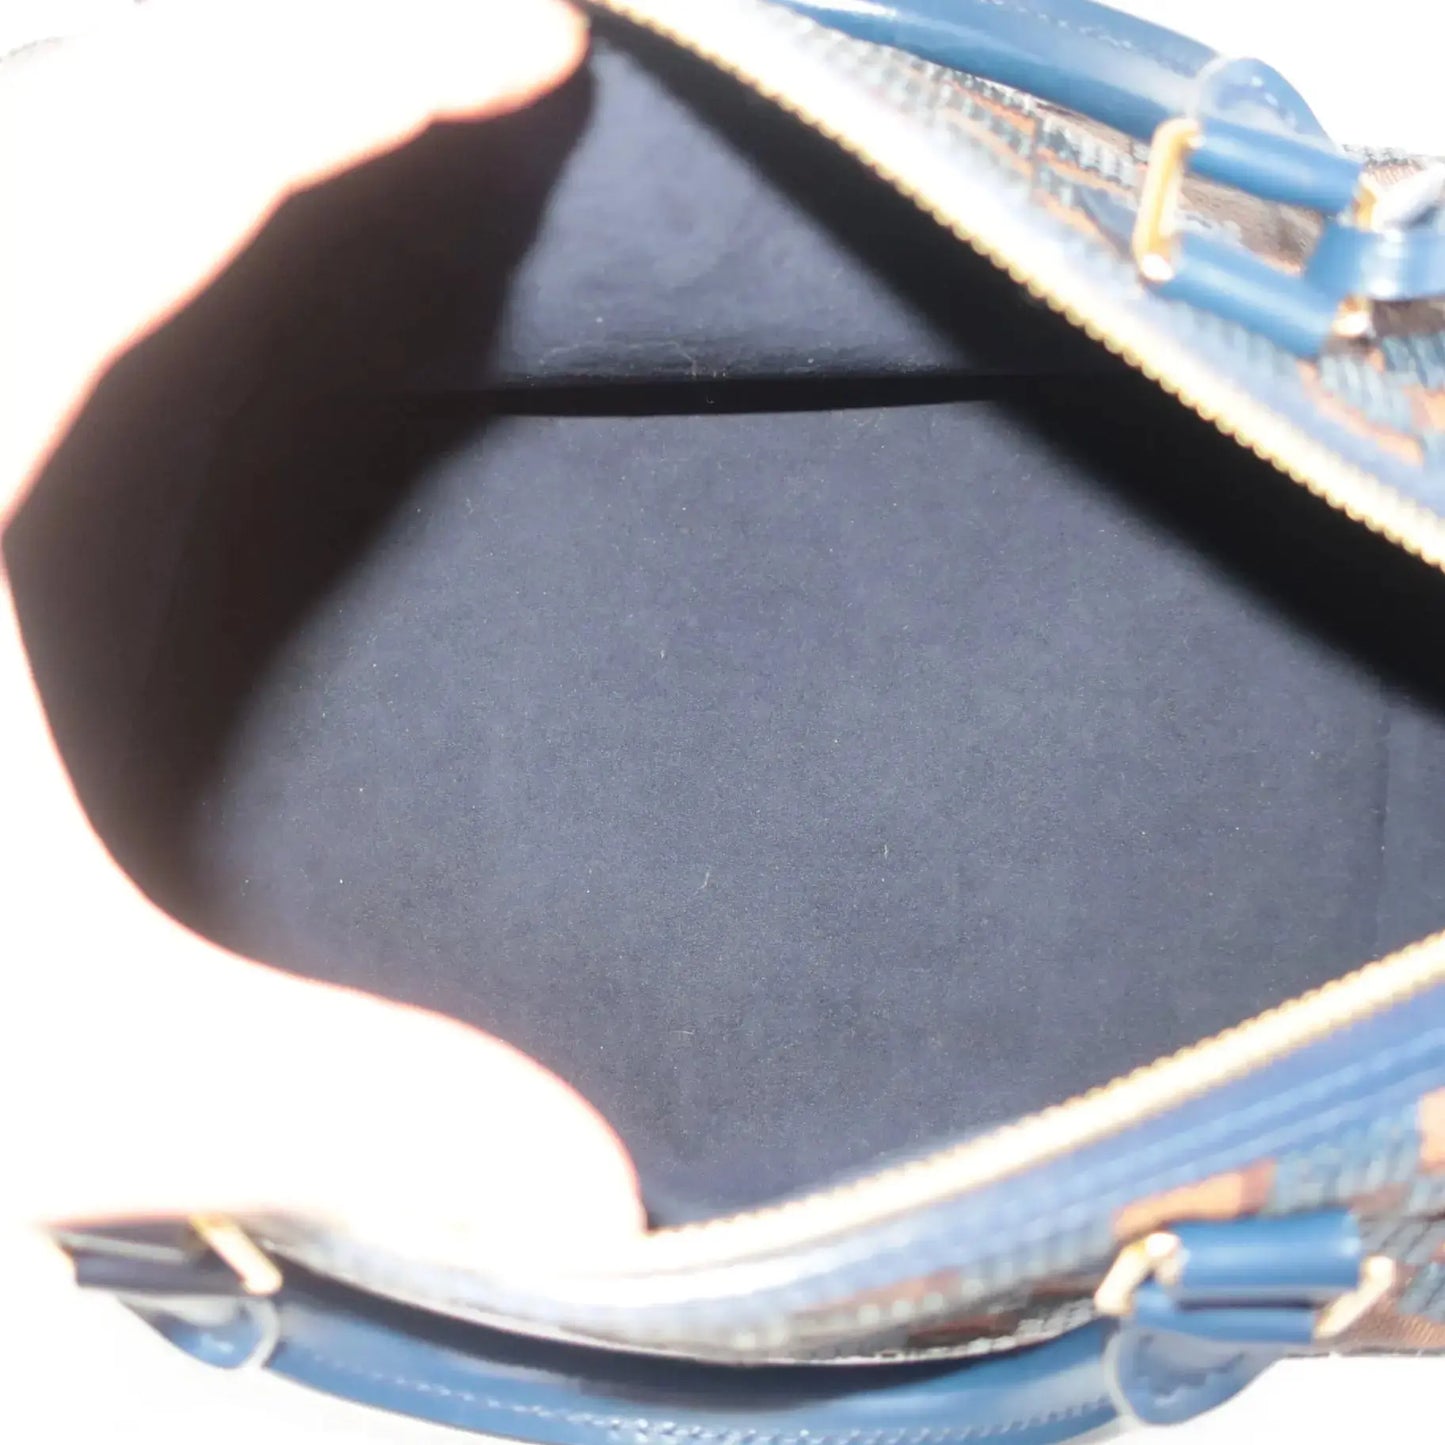 Louis Vuitton Louis Vuitton Limited Edition Blue Damier Paillettes Speedy 30 Bag LVBagaholic